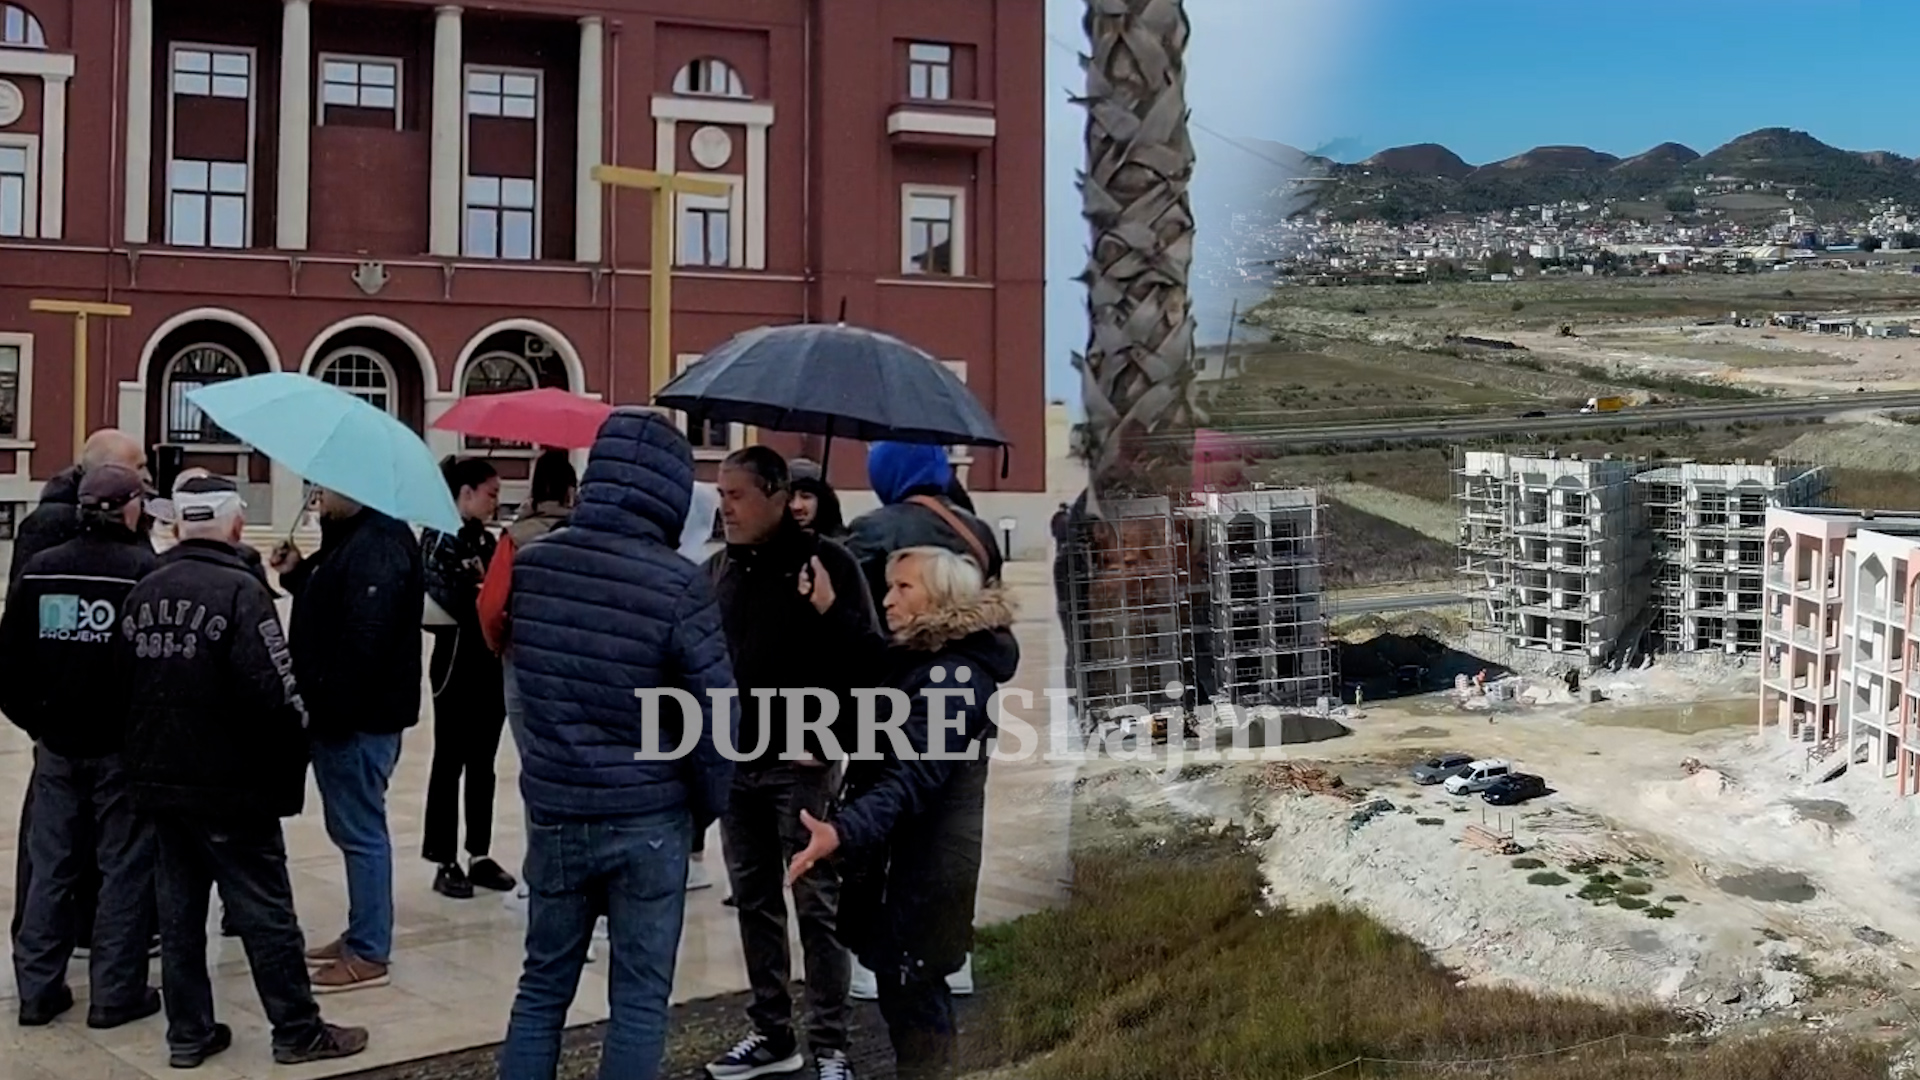 &#8220;Asnjë përgjigje nga bashkia, besojmë te kryeministri!&#8221; Qytetarët protestojnë para bashkisë Durrës për fatin e pallateve të tyre (VIDEO)